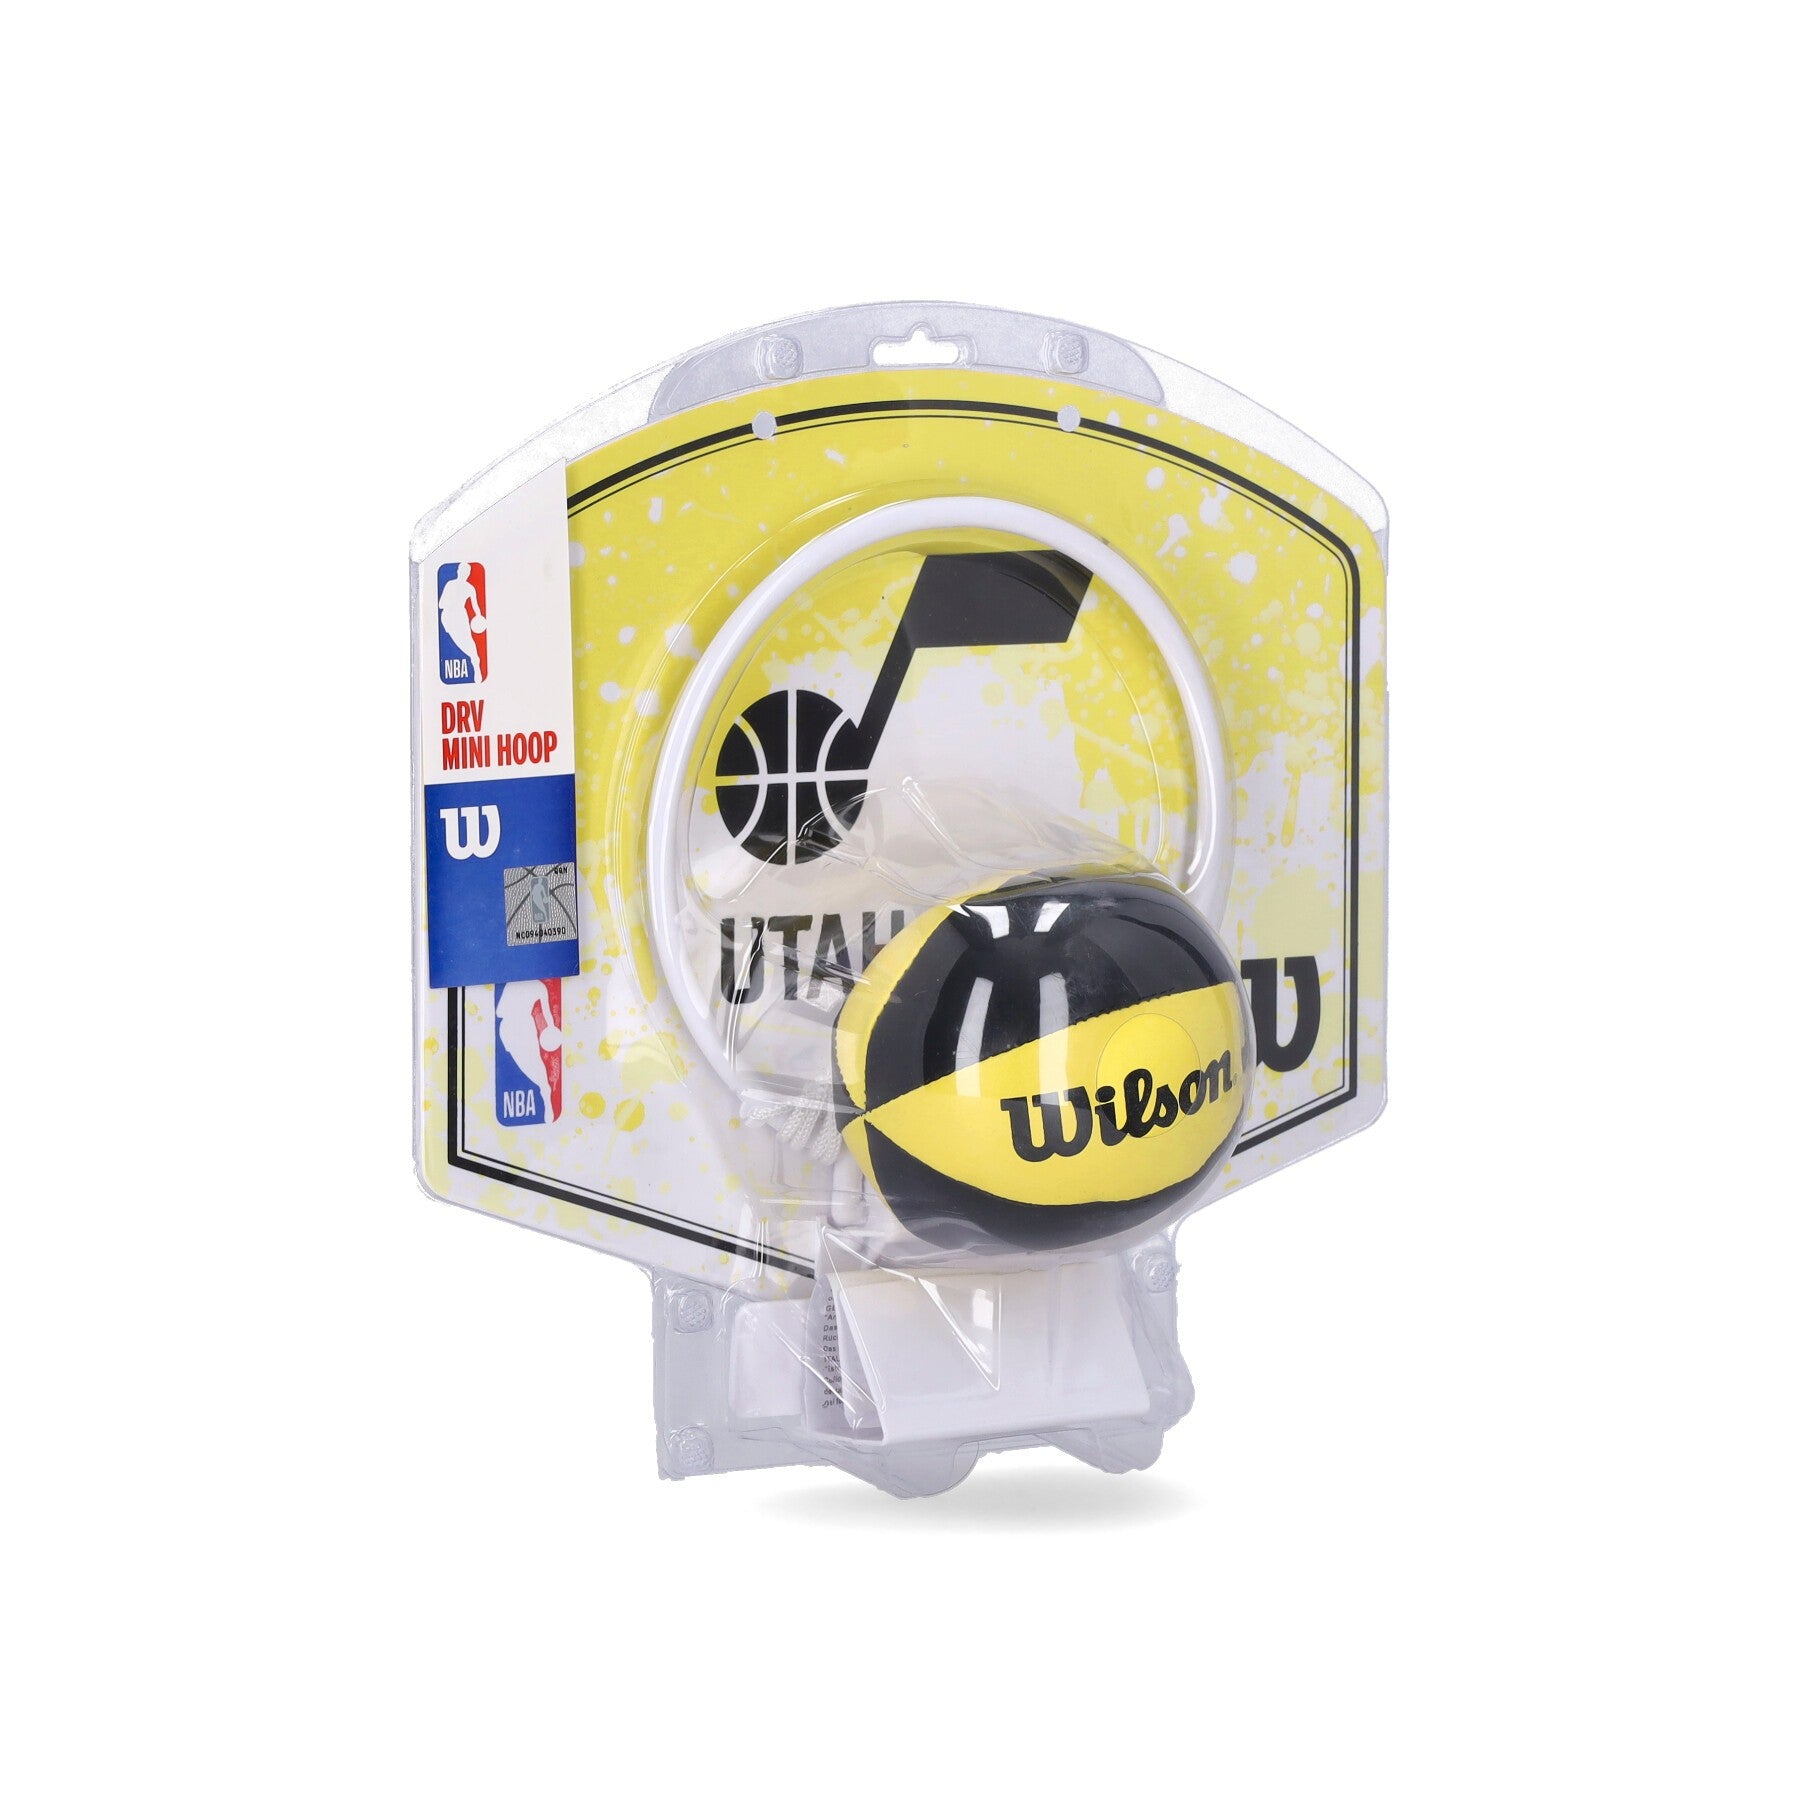 Mini Basketball Set Uomo Nba Team Mini Hoop Utajaz Original Team Colors